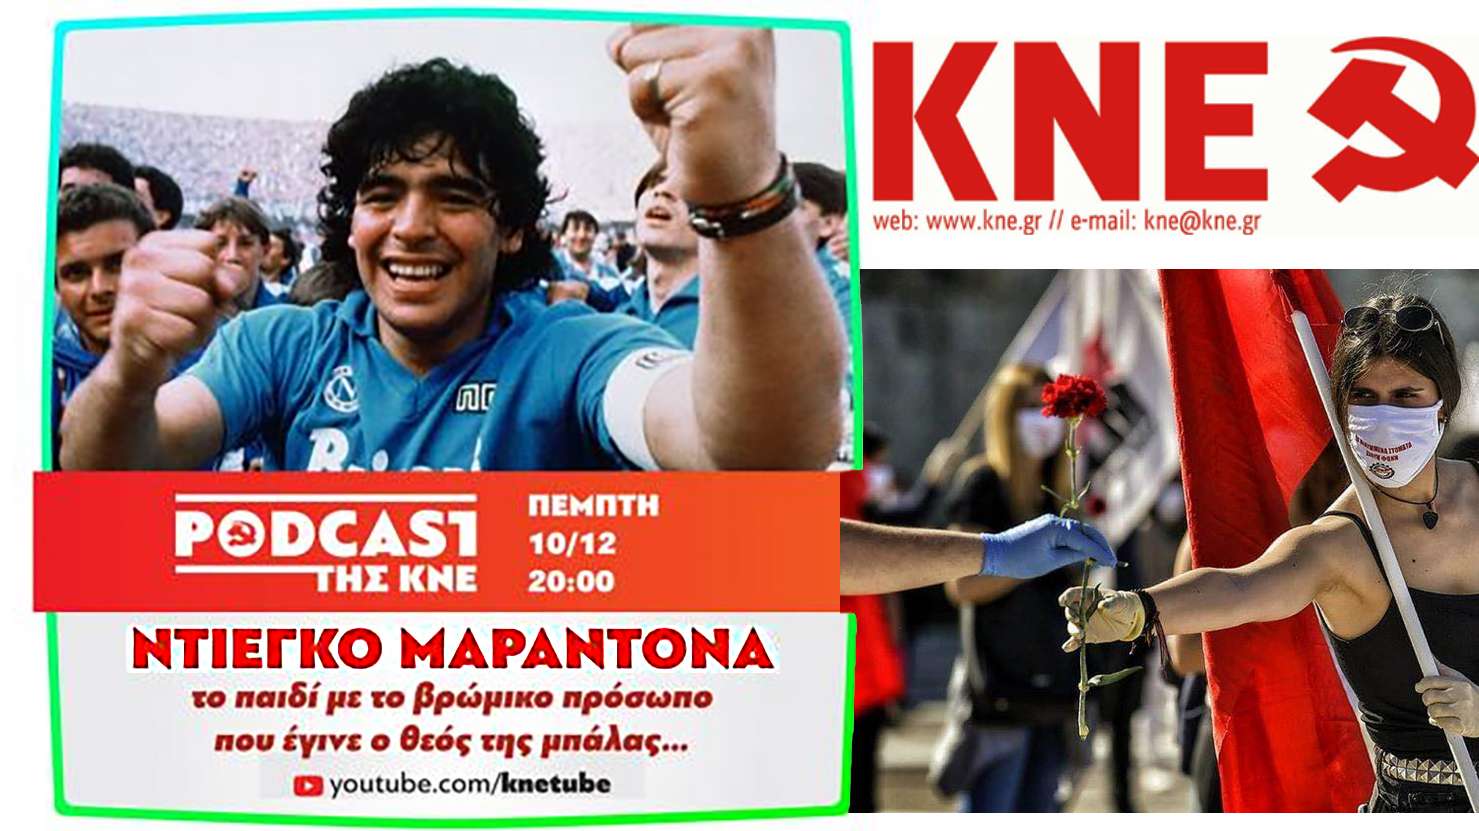 ΚΝΕ Diego Maradona pod cast